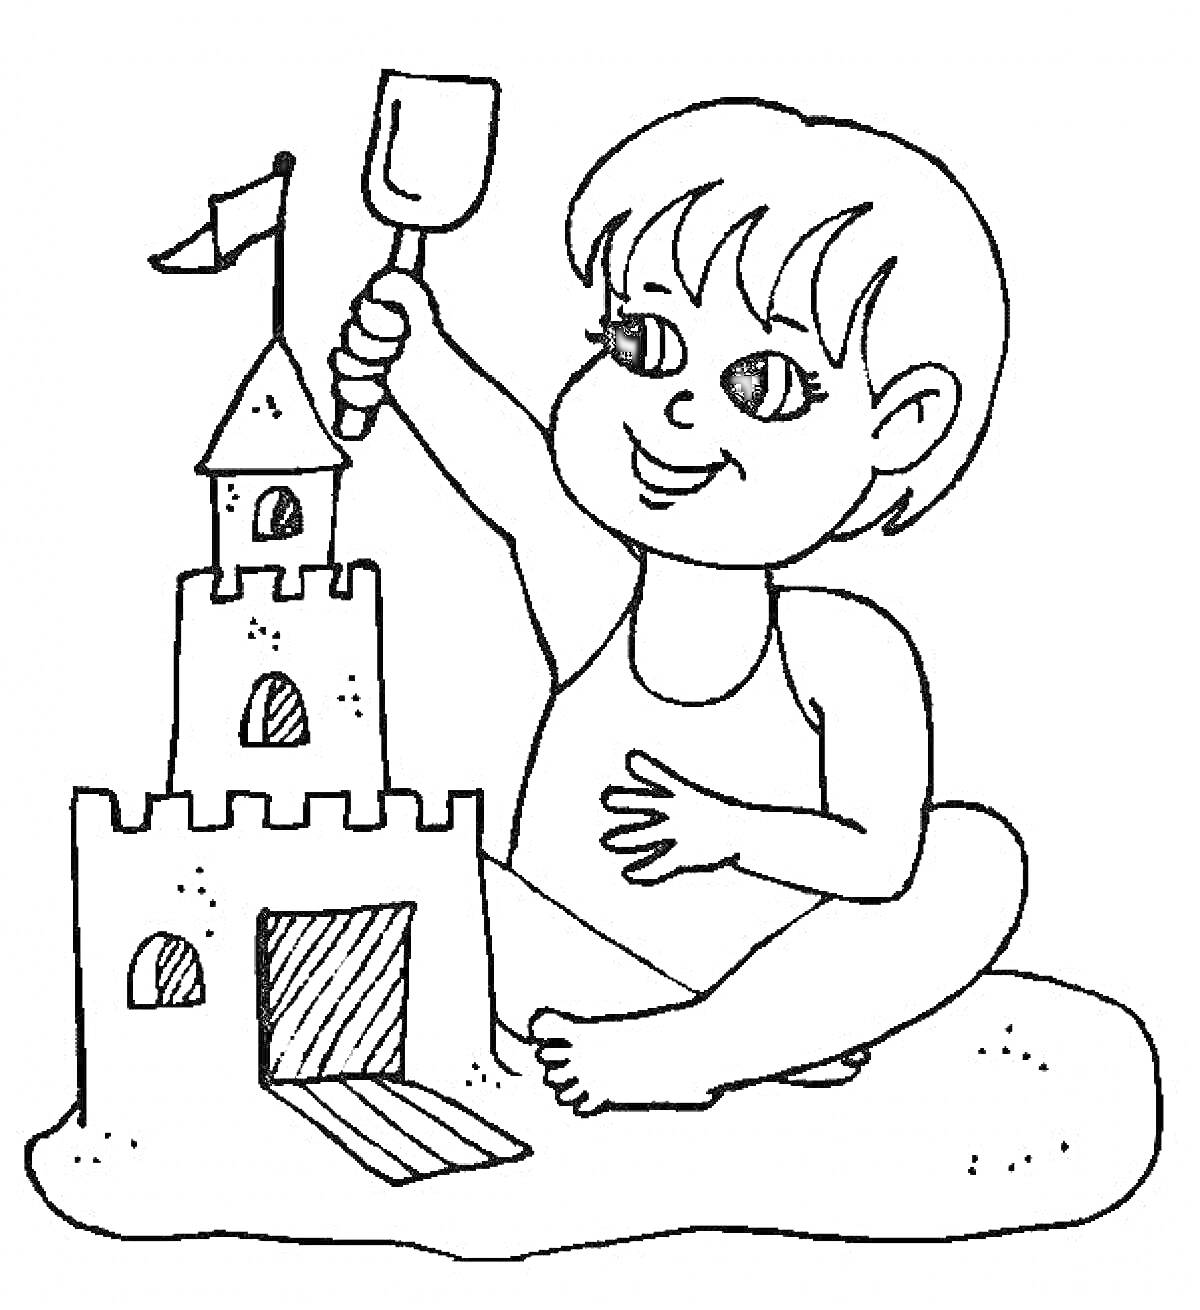 Ребенок строит песочный замок с флагом, держит лопатку, сидя на песке